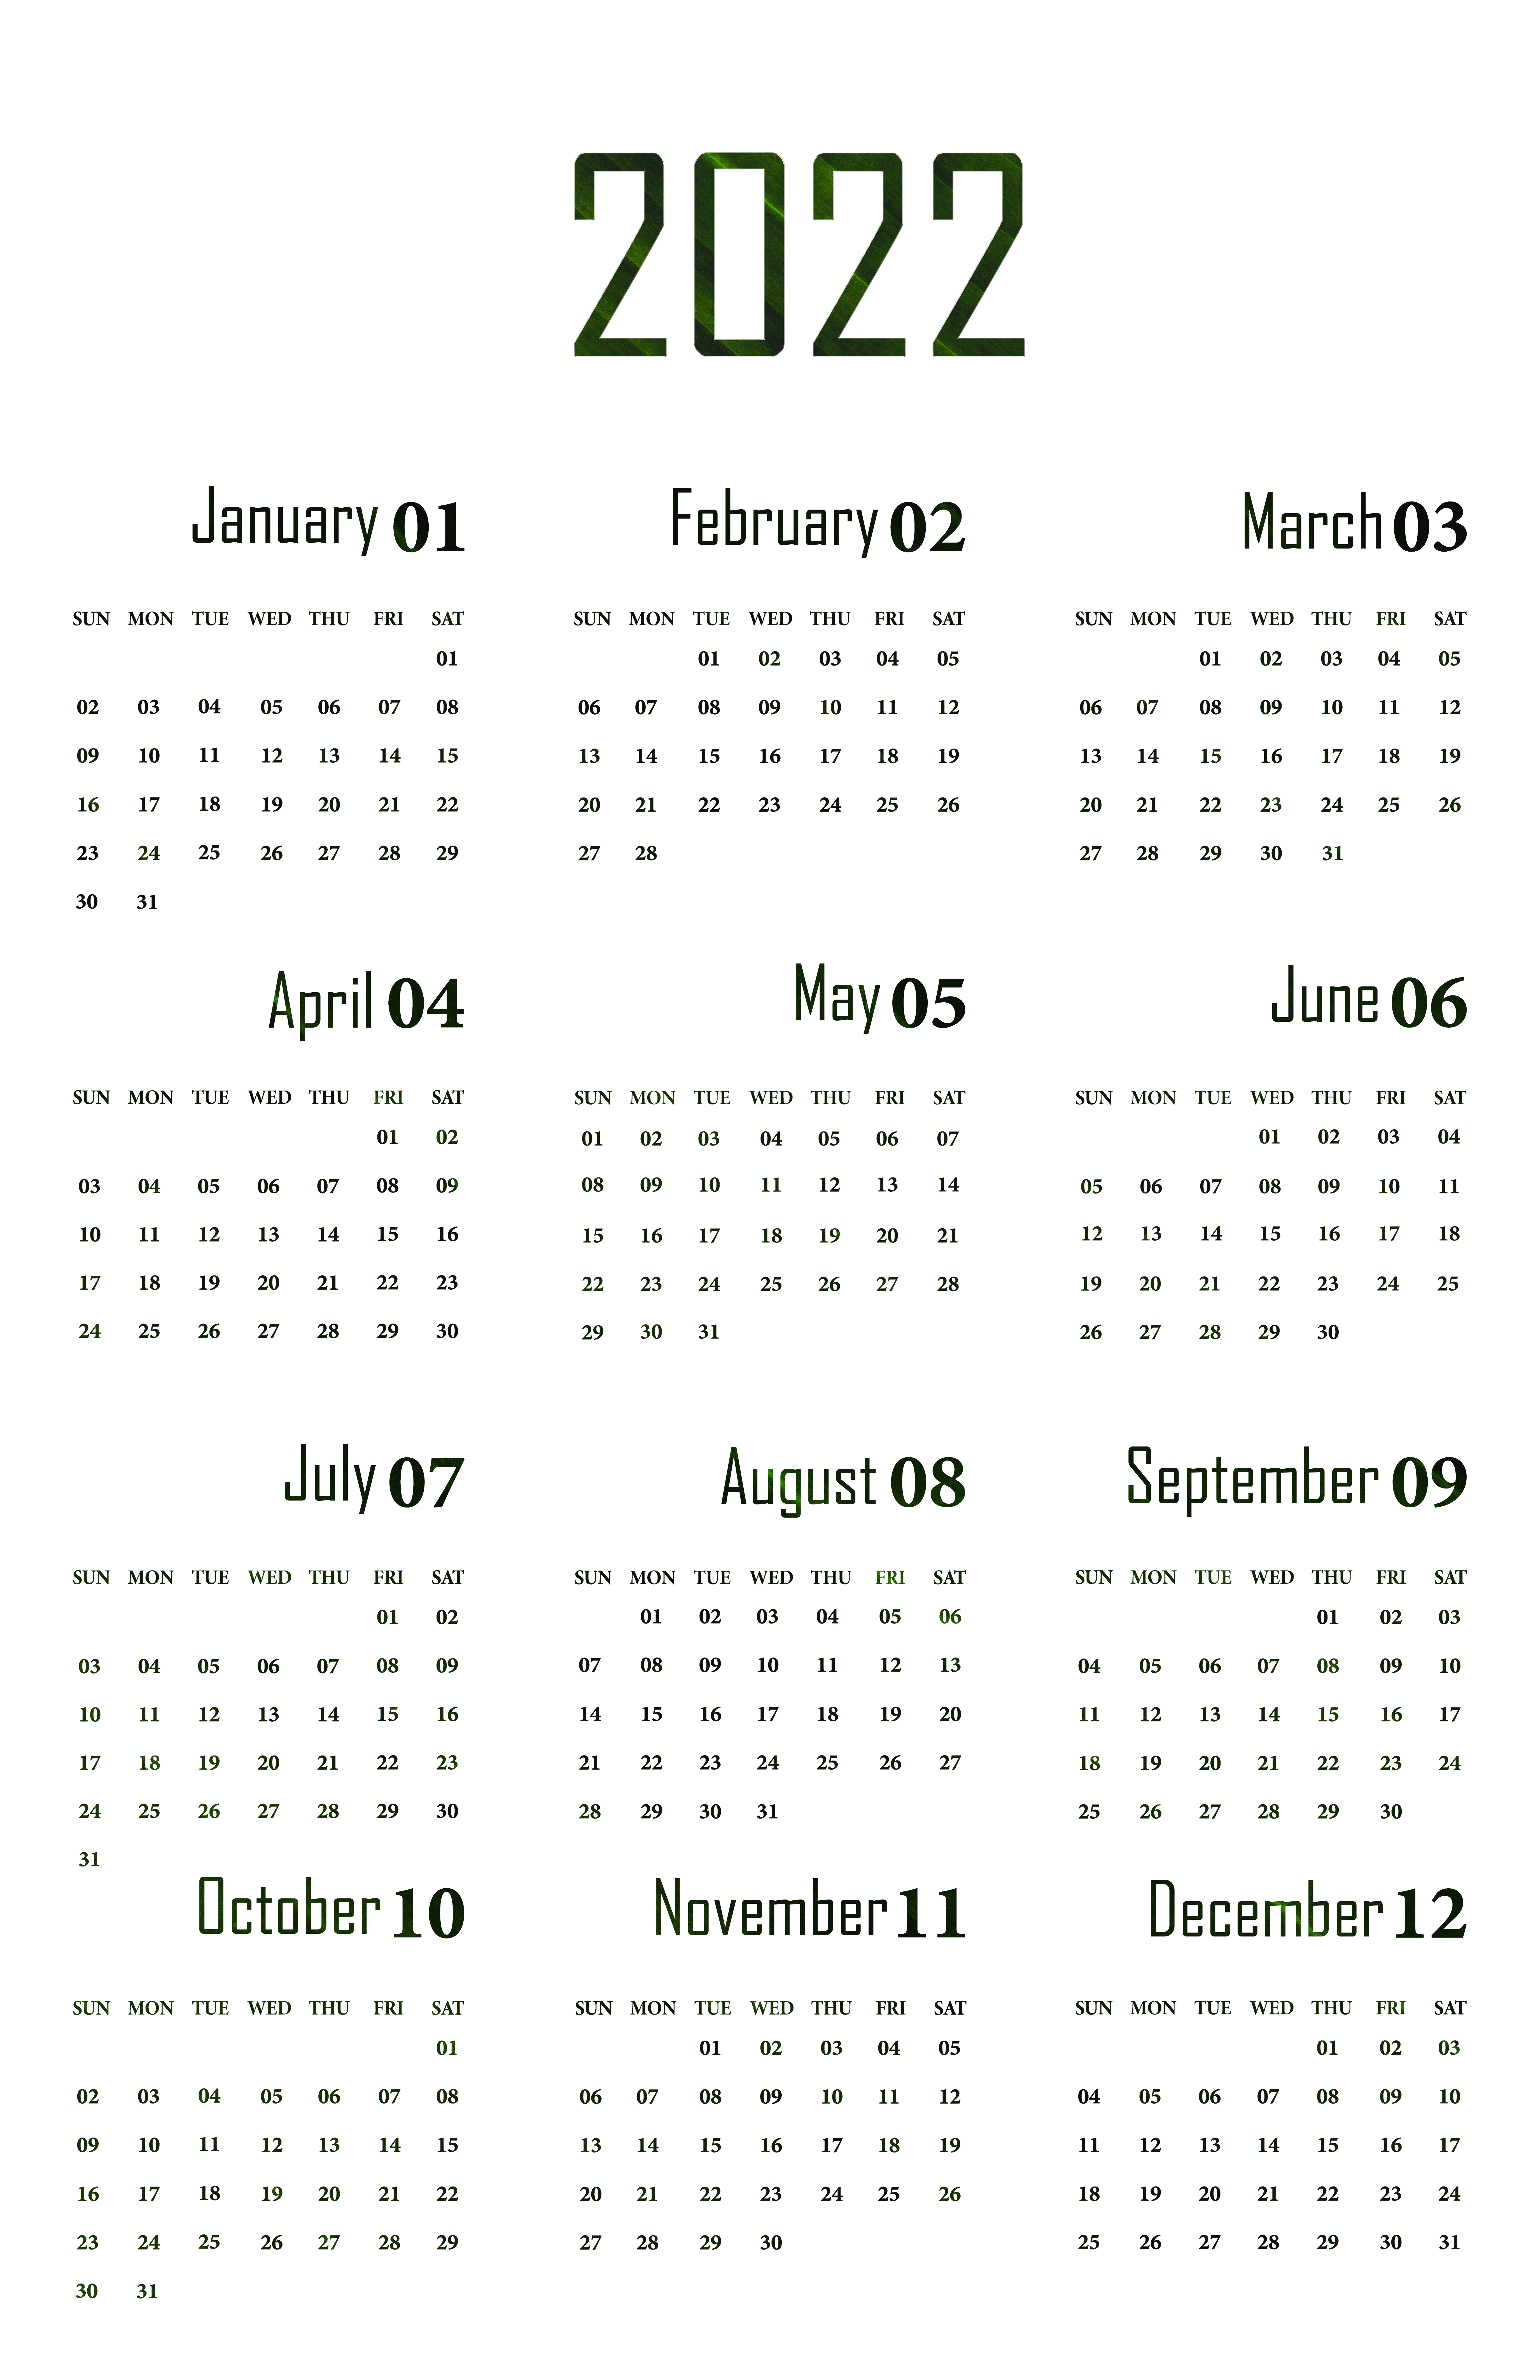 Календарь 2022 PNG Image Прозрачный